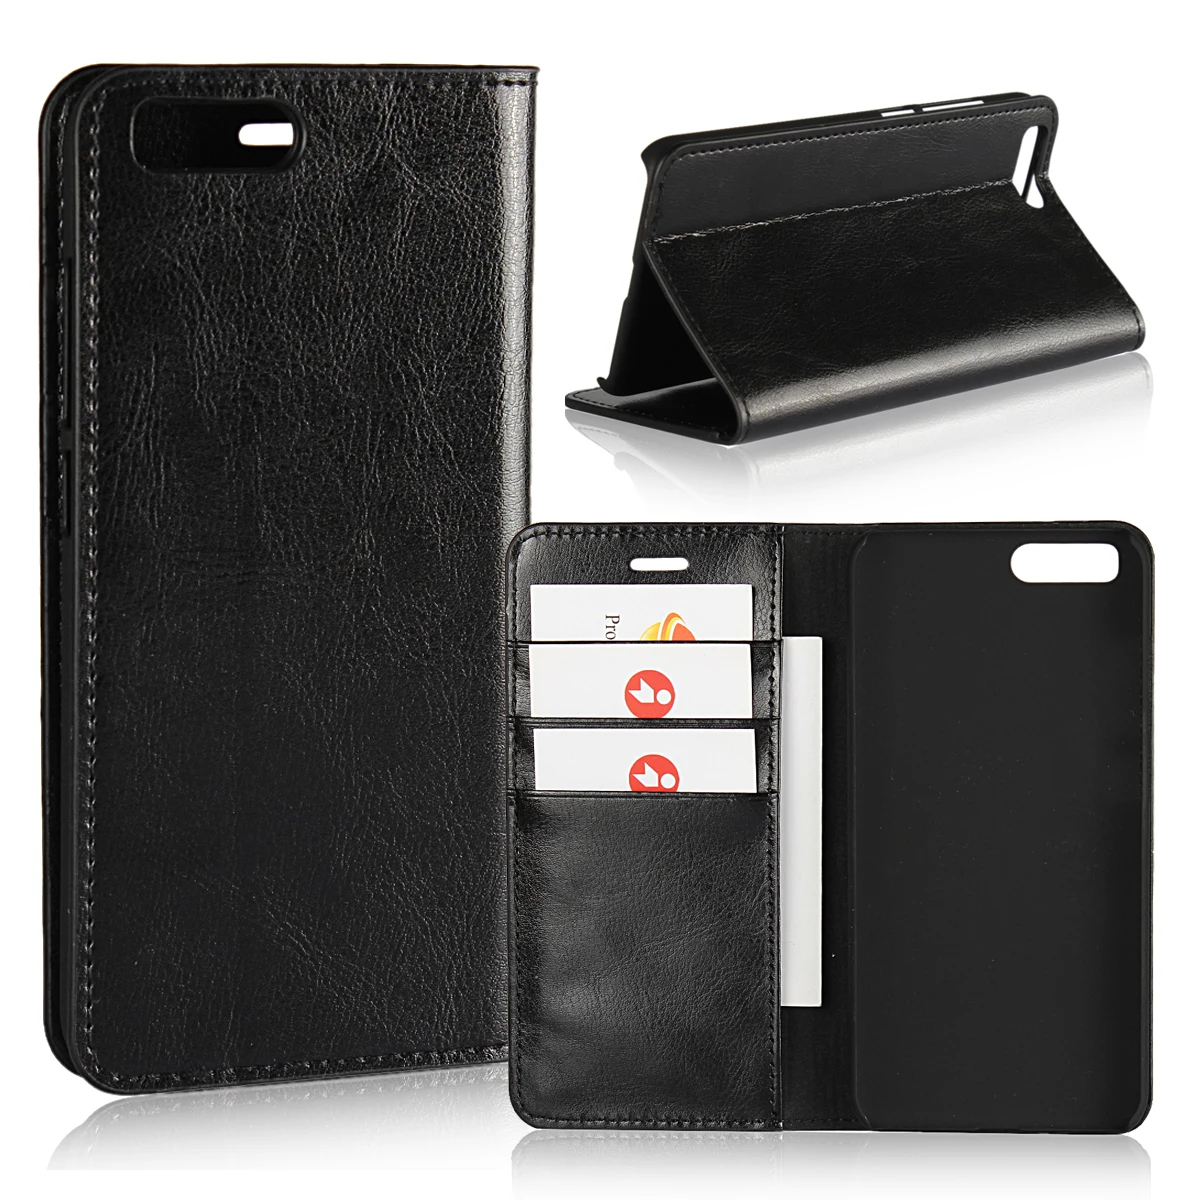 Роскошный чехол-бумажник для Xiao mi 6 mi 6 M6 pre mi um кожаный чехол с отделениями для карт и денег чехлы для телефонов - Цвет: Черный